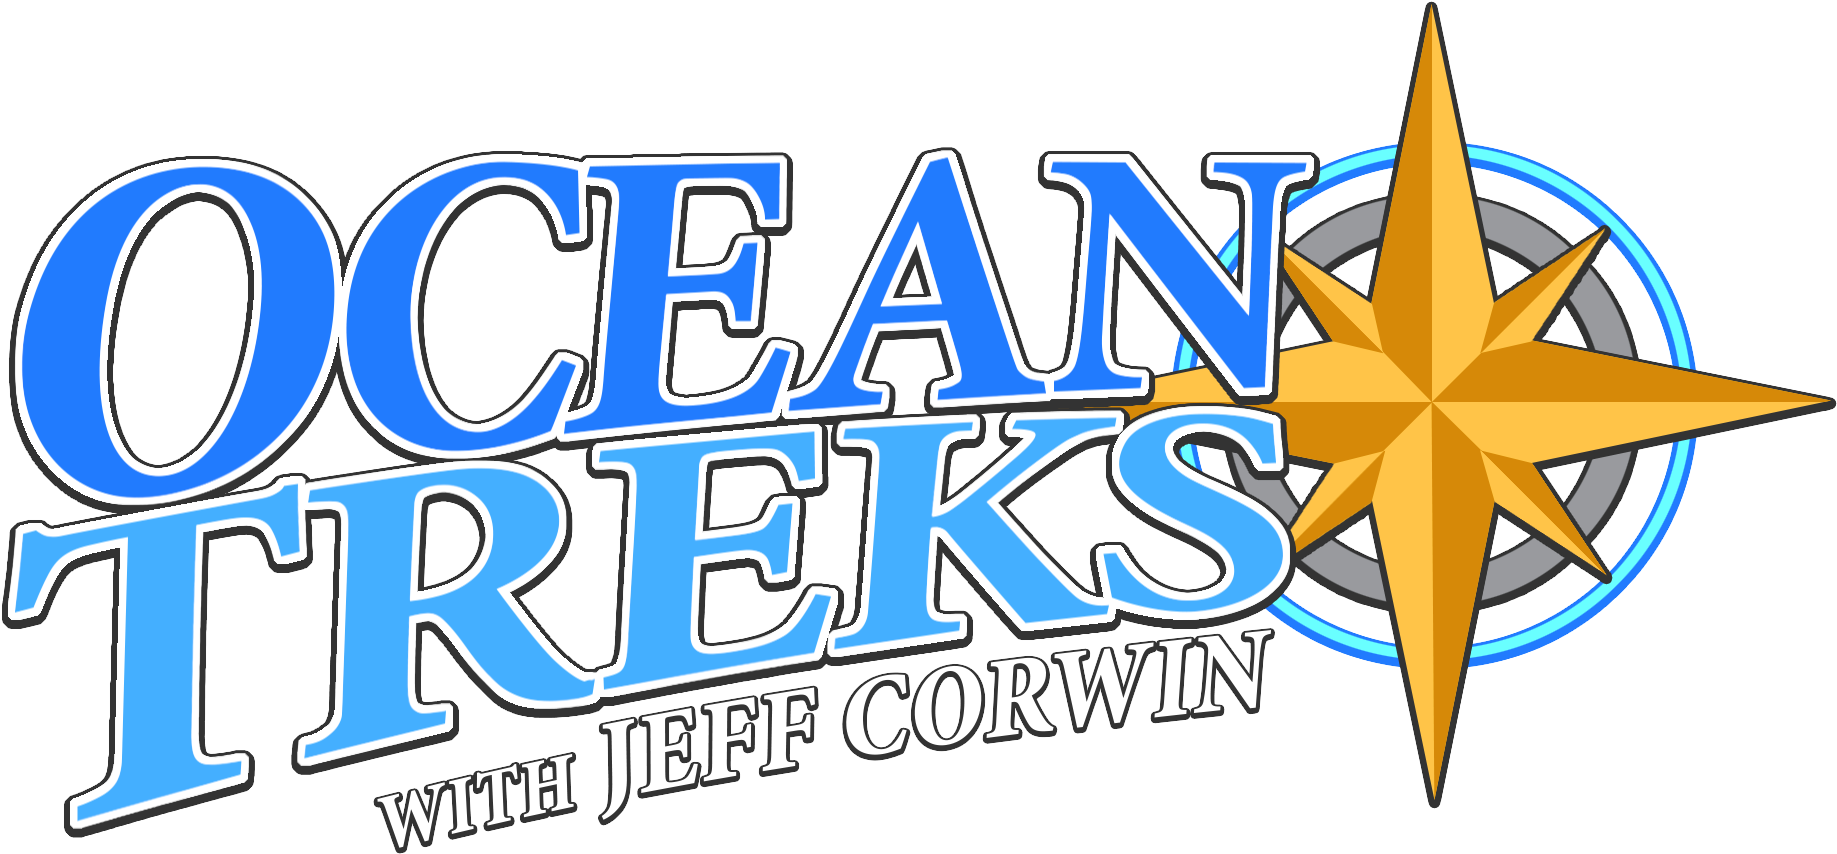 Download - Ocean Treks With Jeff Corwin (1920x1080)